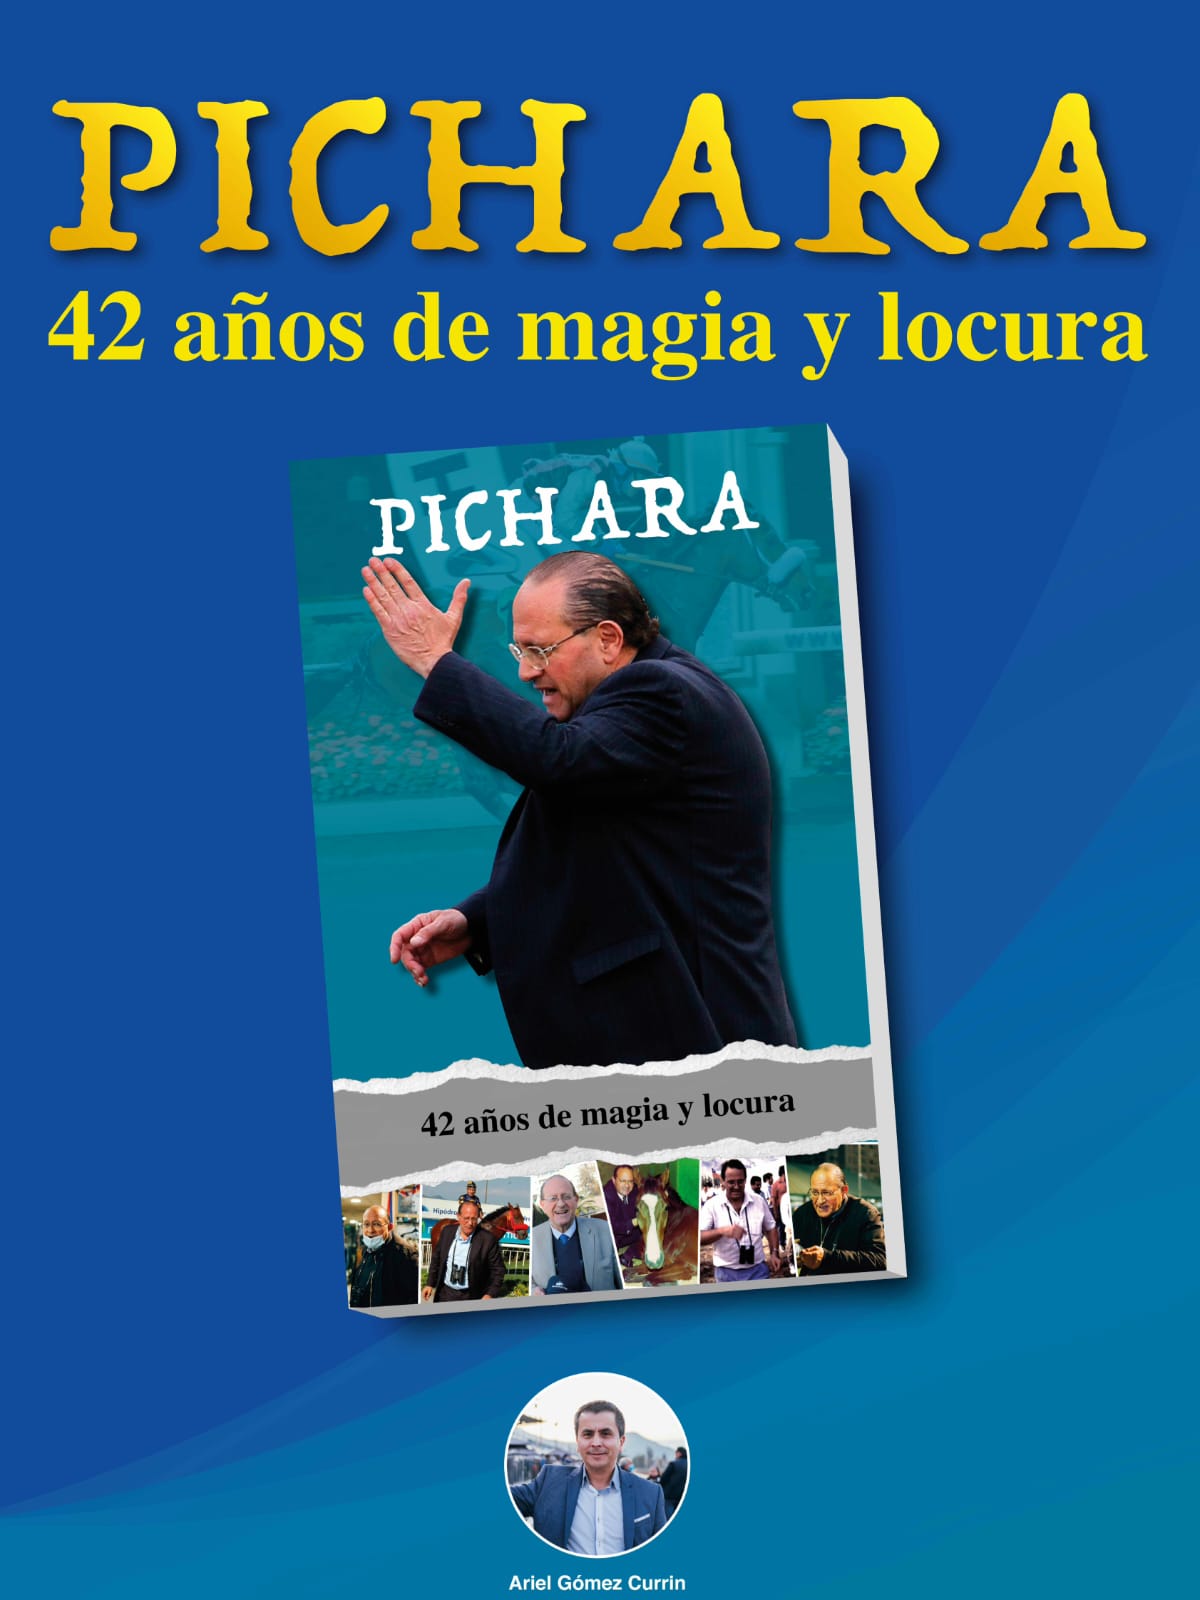 el periodista hípico Ariel Gómez Currin lanzará este sábado 1 de octubre el libro Pichara, 42 años de magia y locura